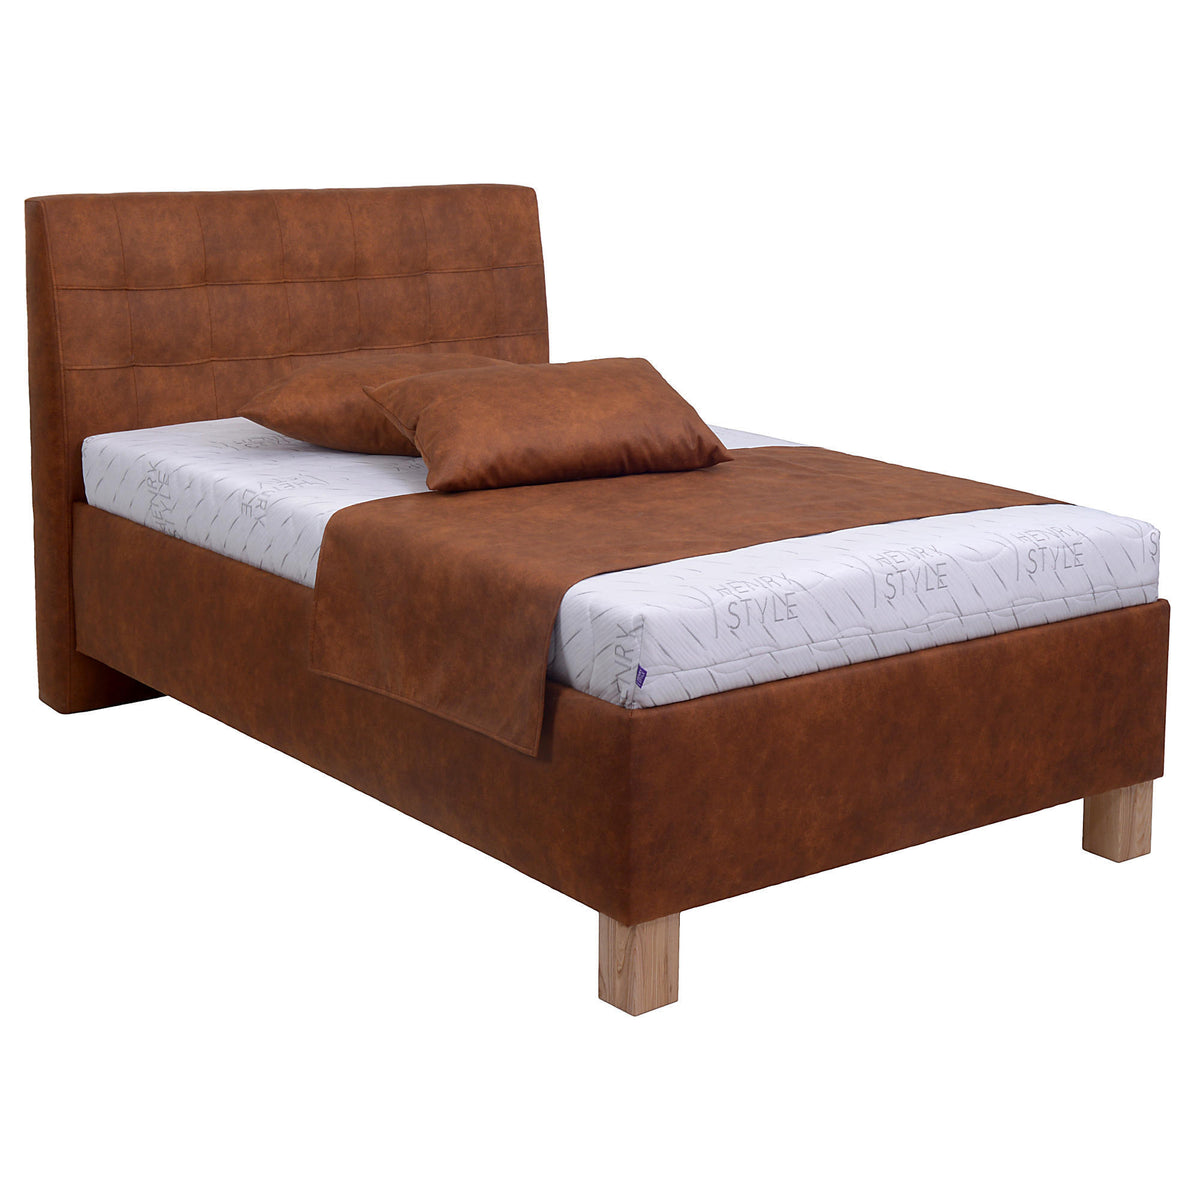 Čalouněná postel Victoria 140x200, hnědá, včetně matrace